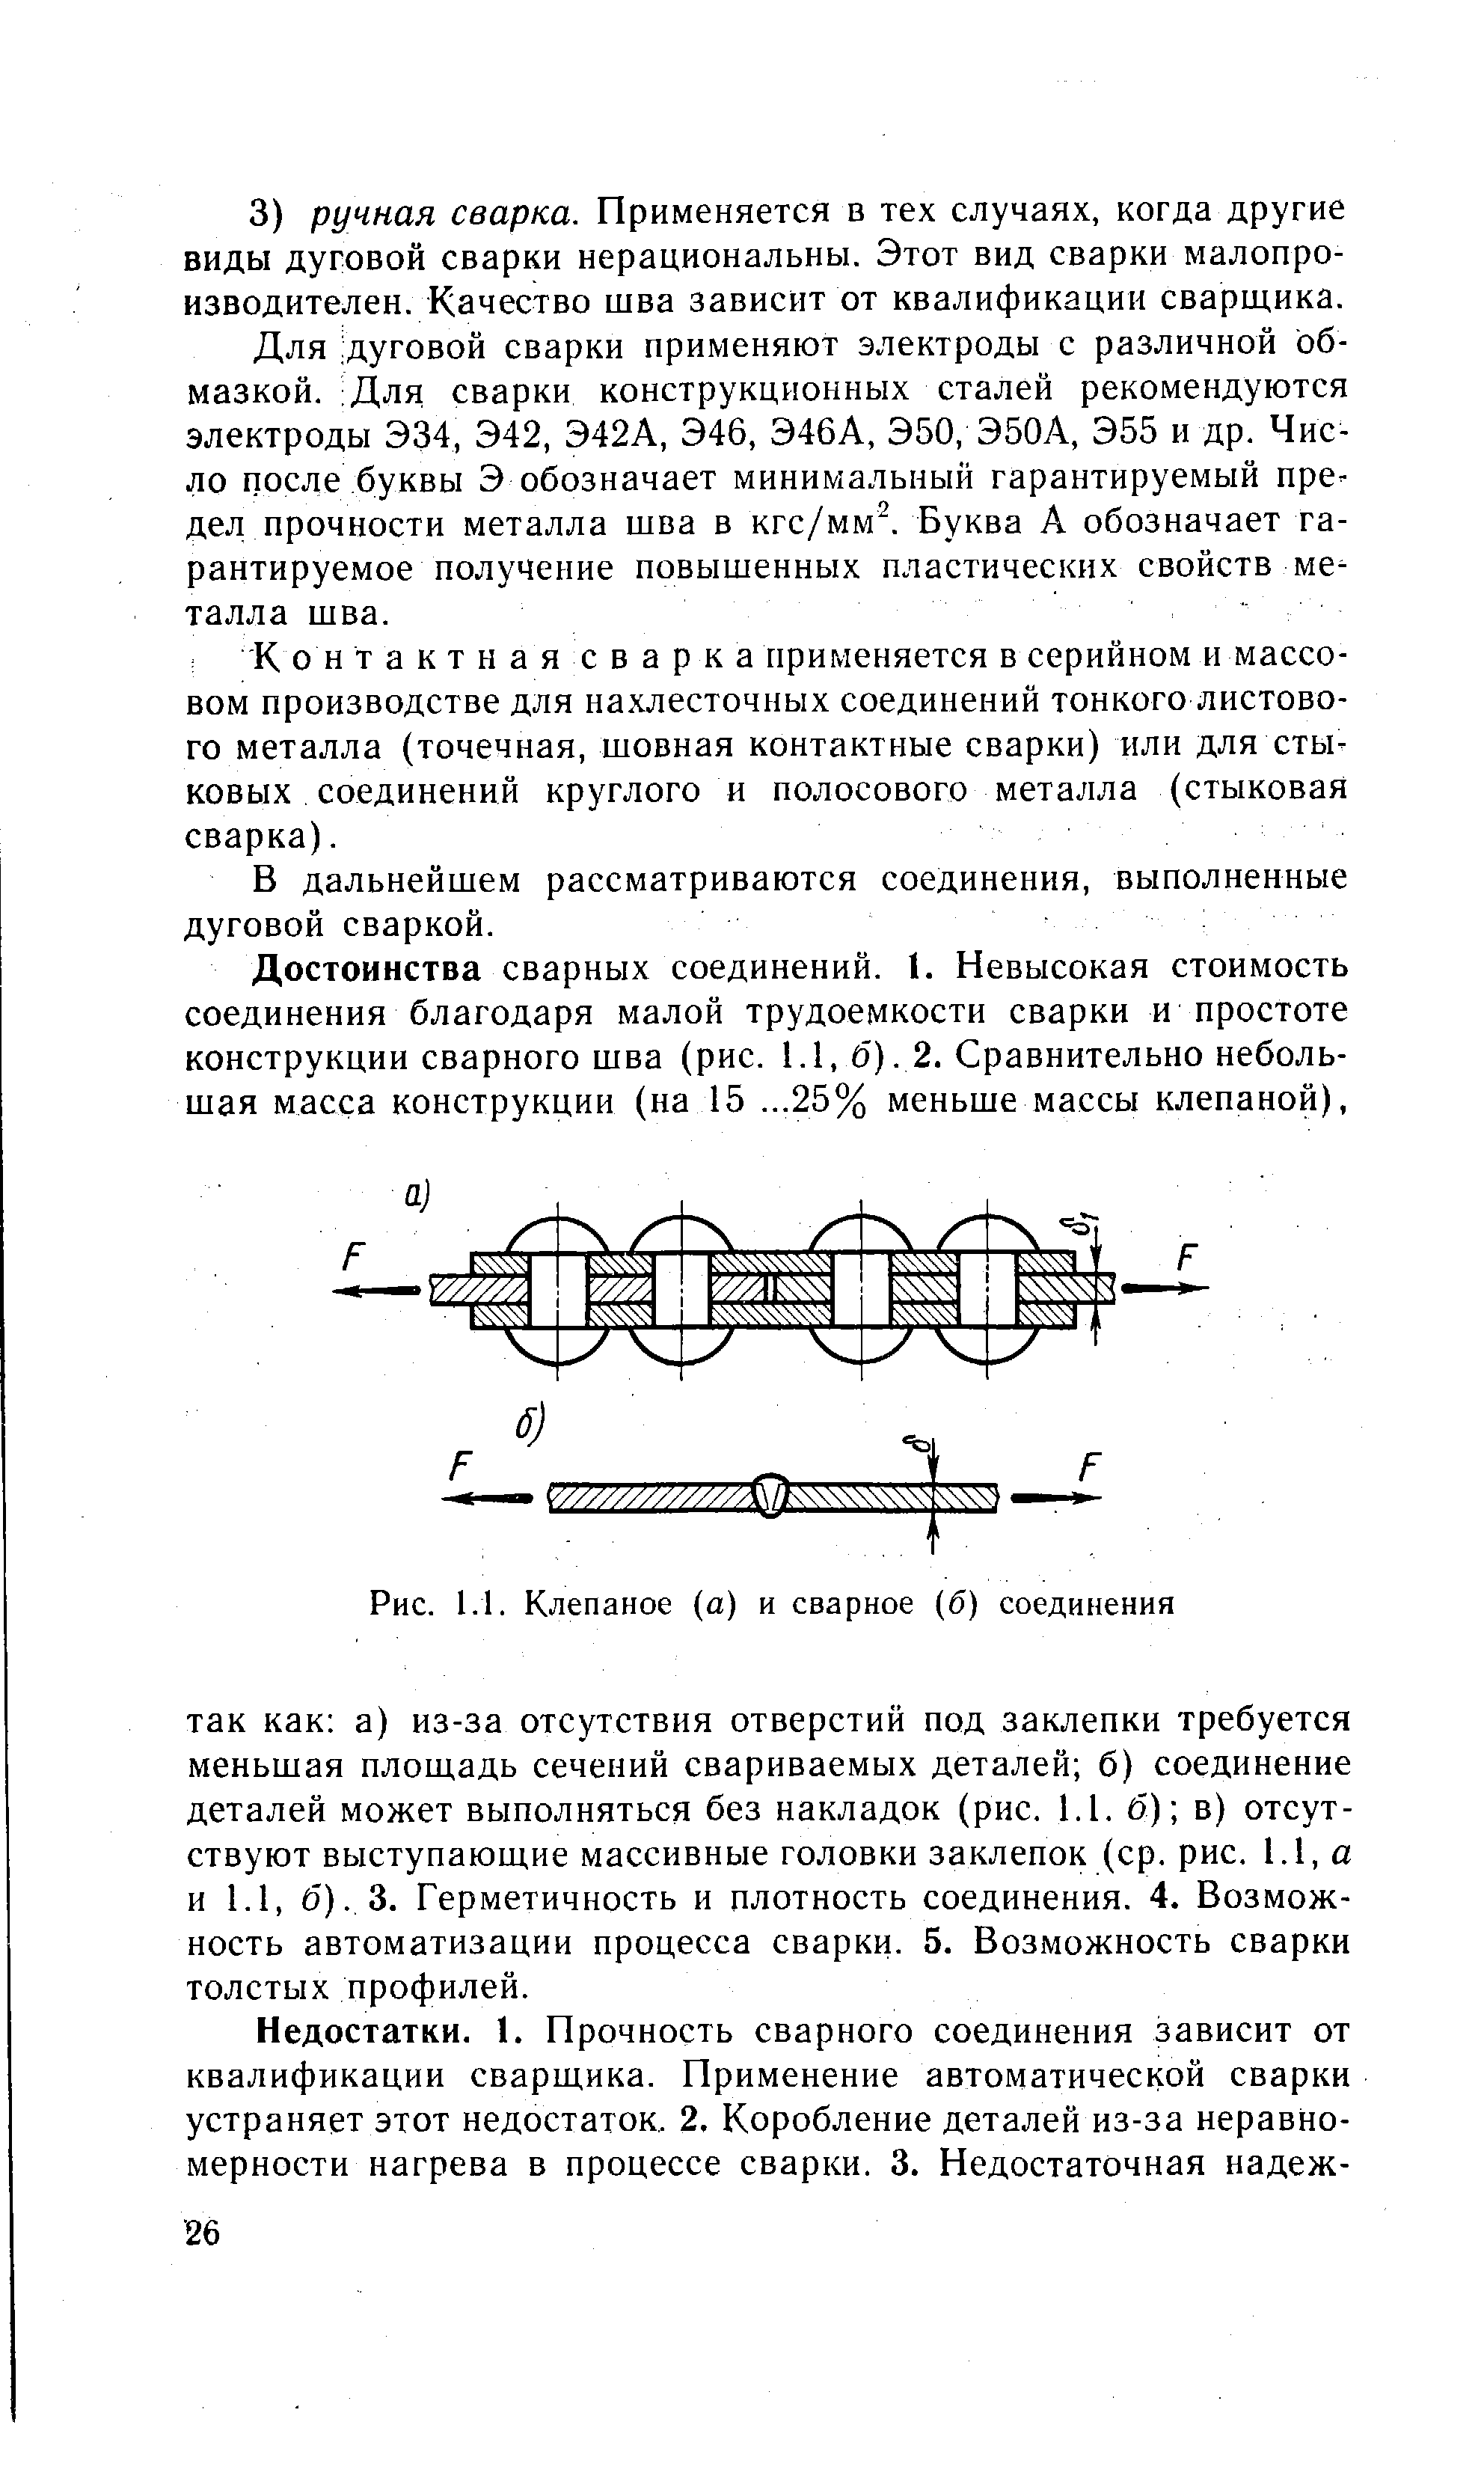 Рис. 1.1. Клепаное (а) и сварное (б) соединения
